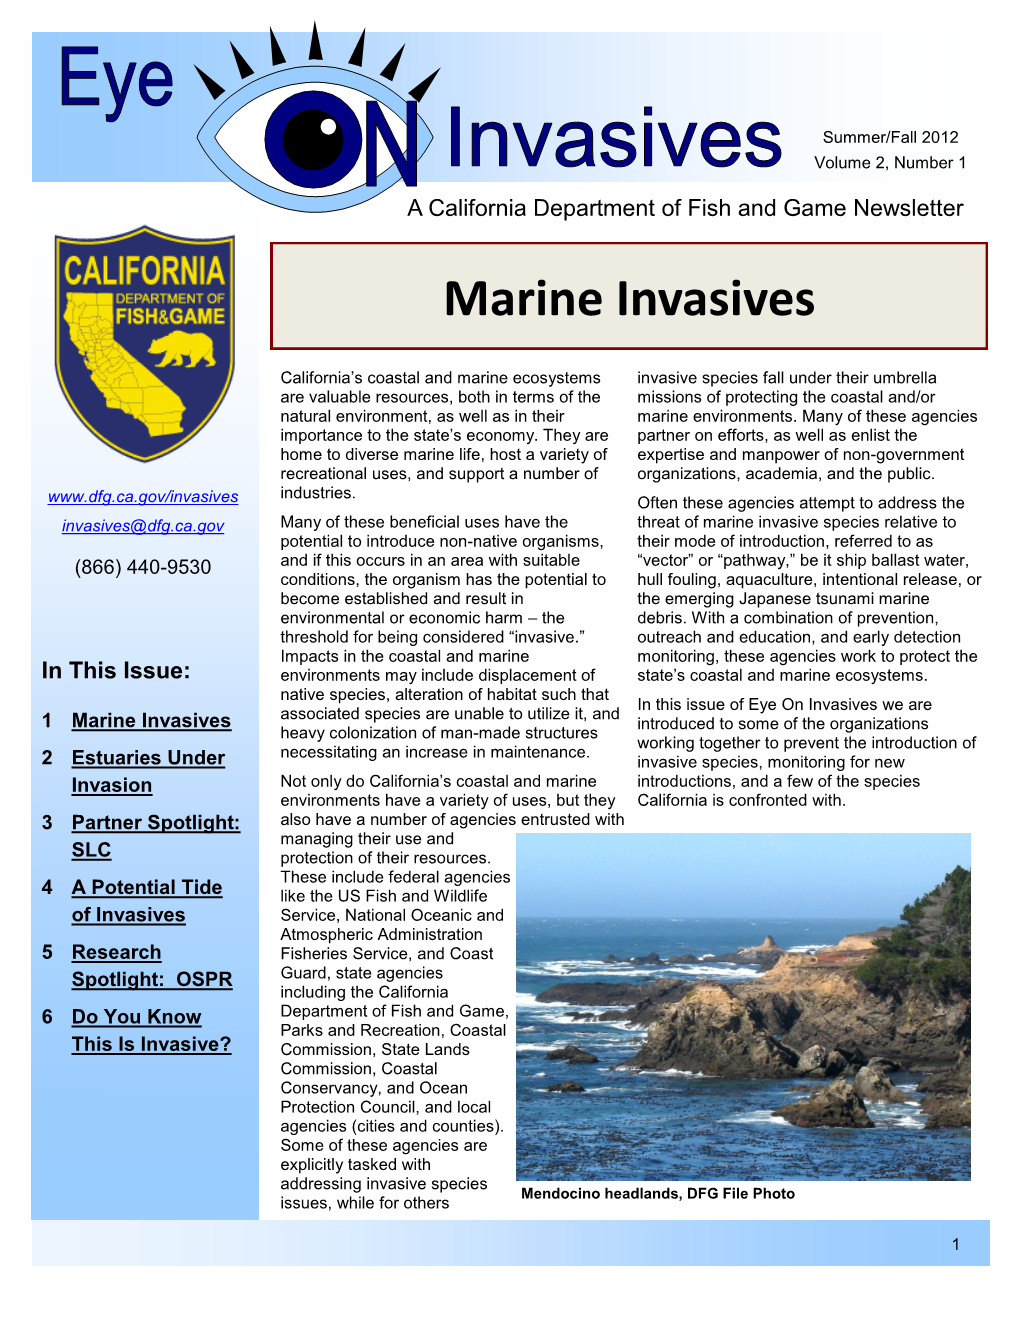 Eye on Invasives Newsletter: Volume 2, Number 1, Summer/Fall